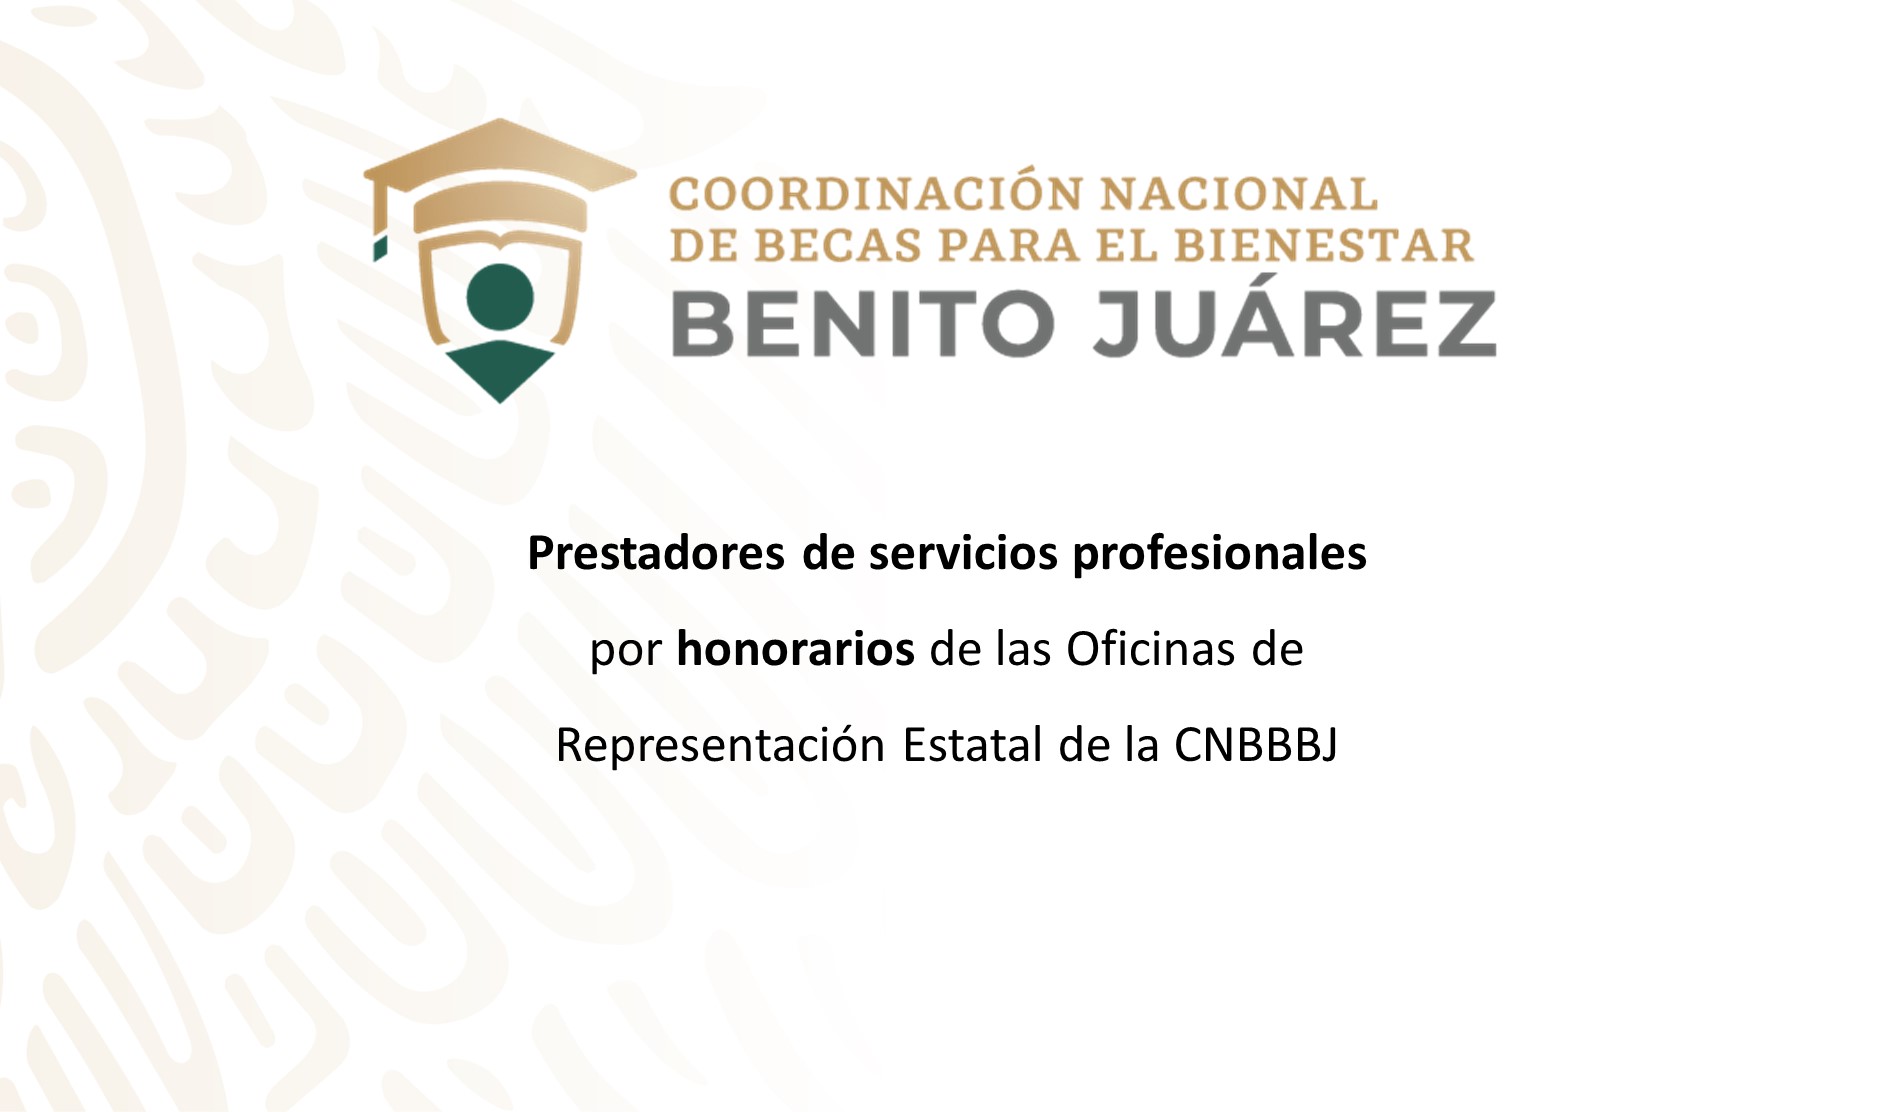 Prestadores de servicios profesionales por honorarios de las Oficinas de Representación Estatal de la CNBBBJ